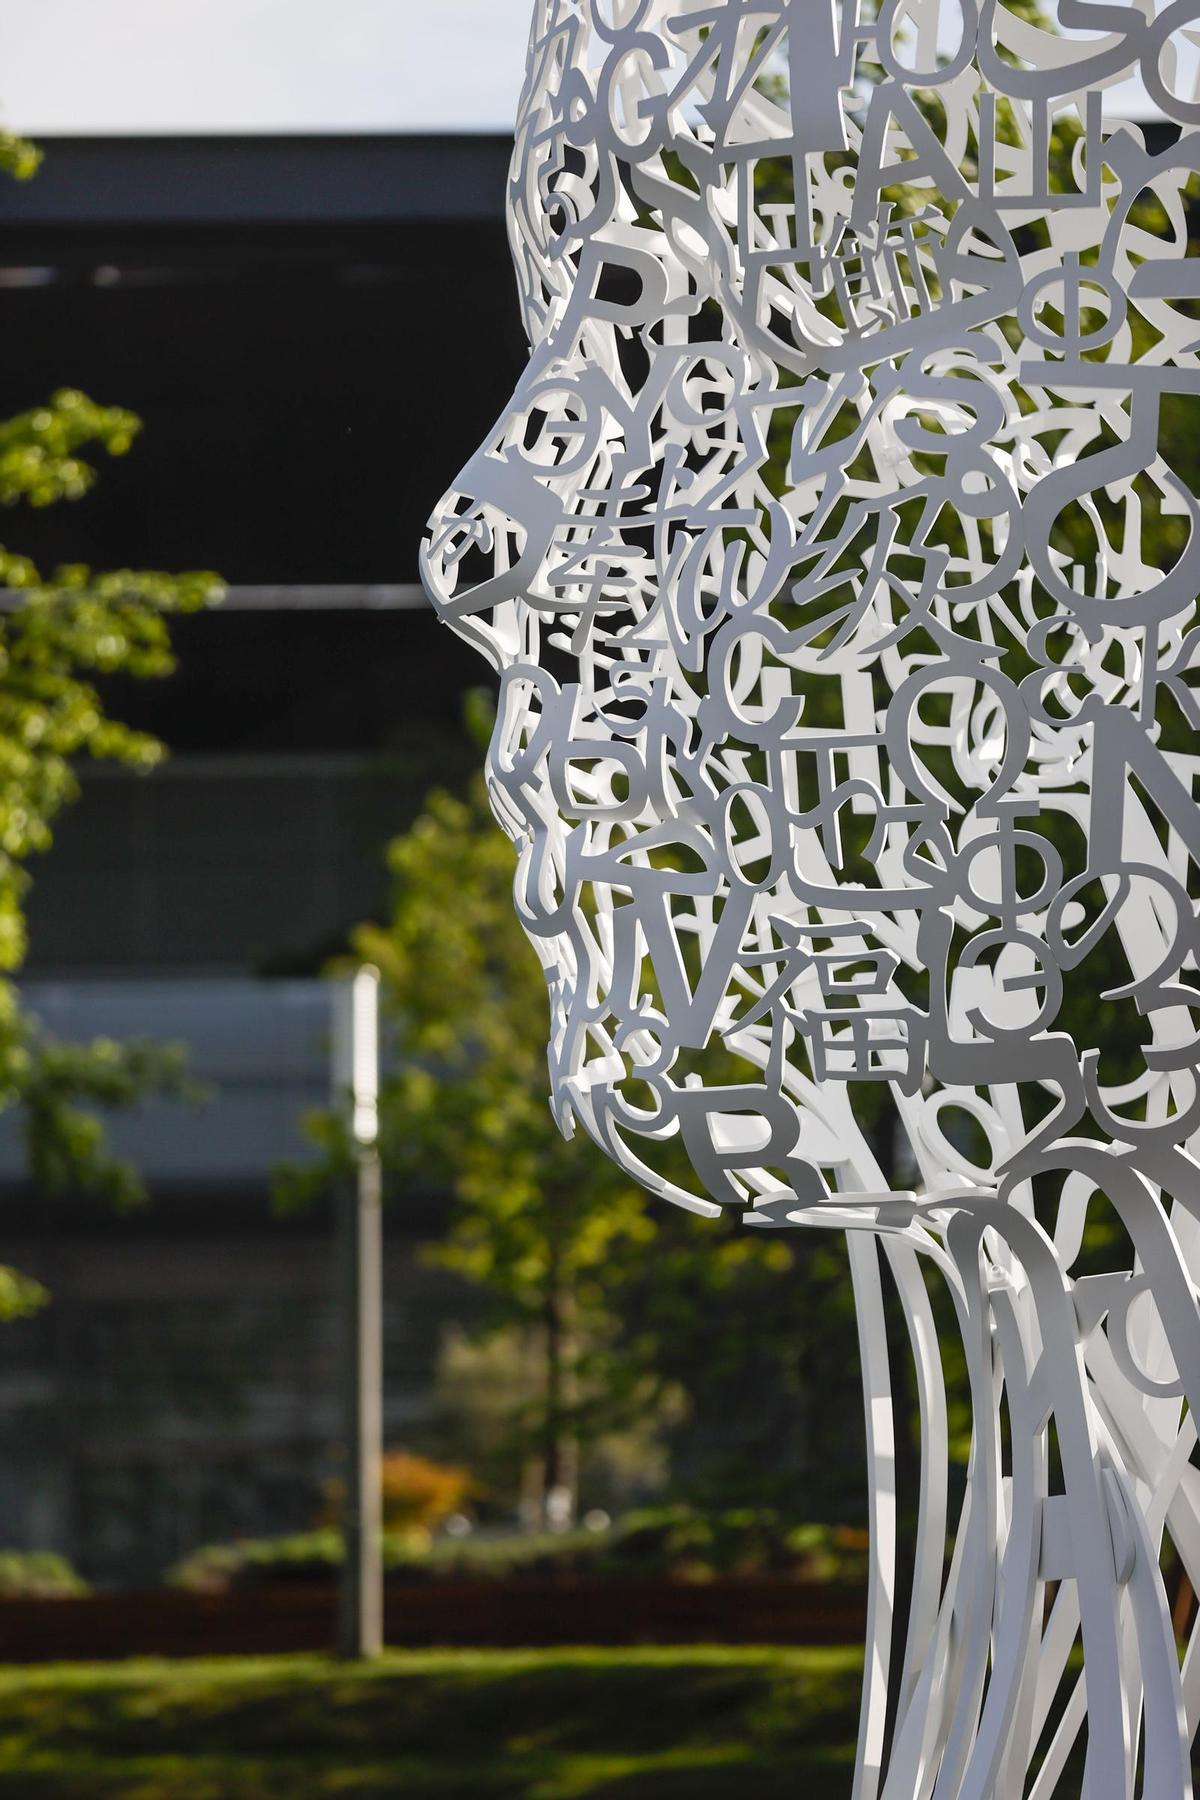 Nueva escultura del artista Jaume Plensa en Madrid